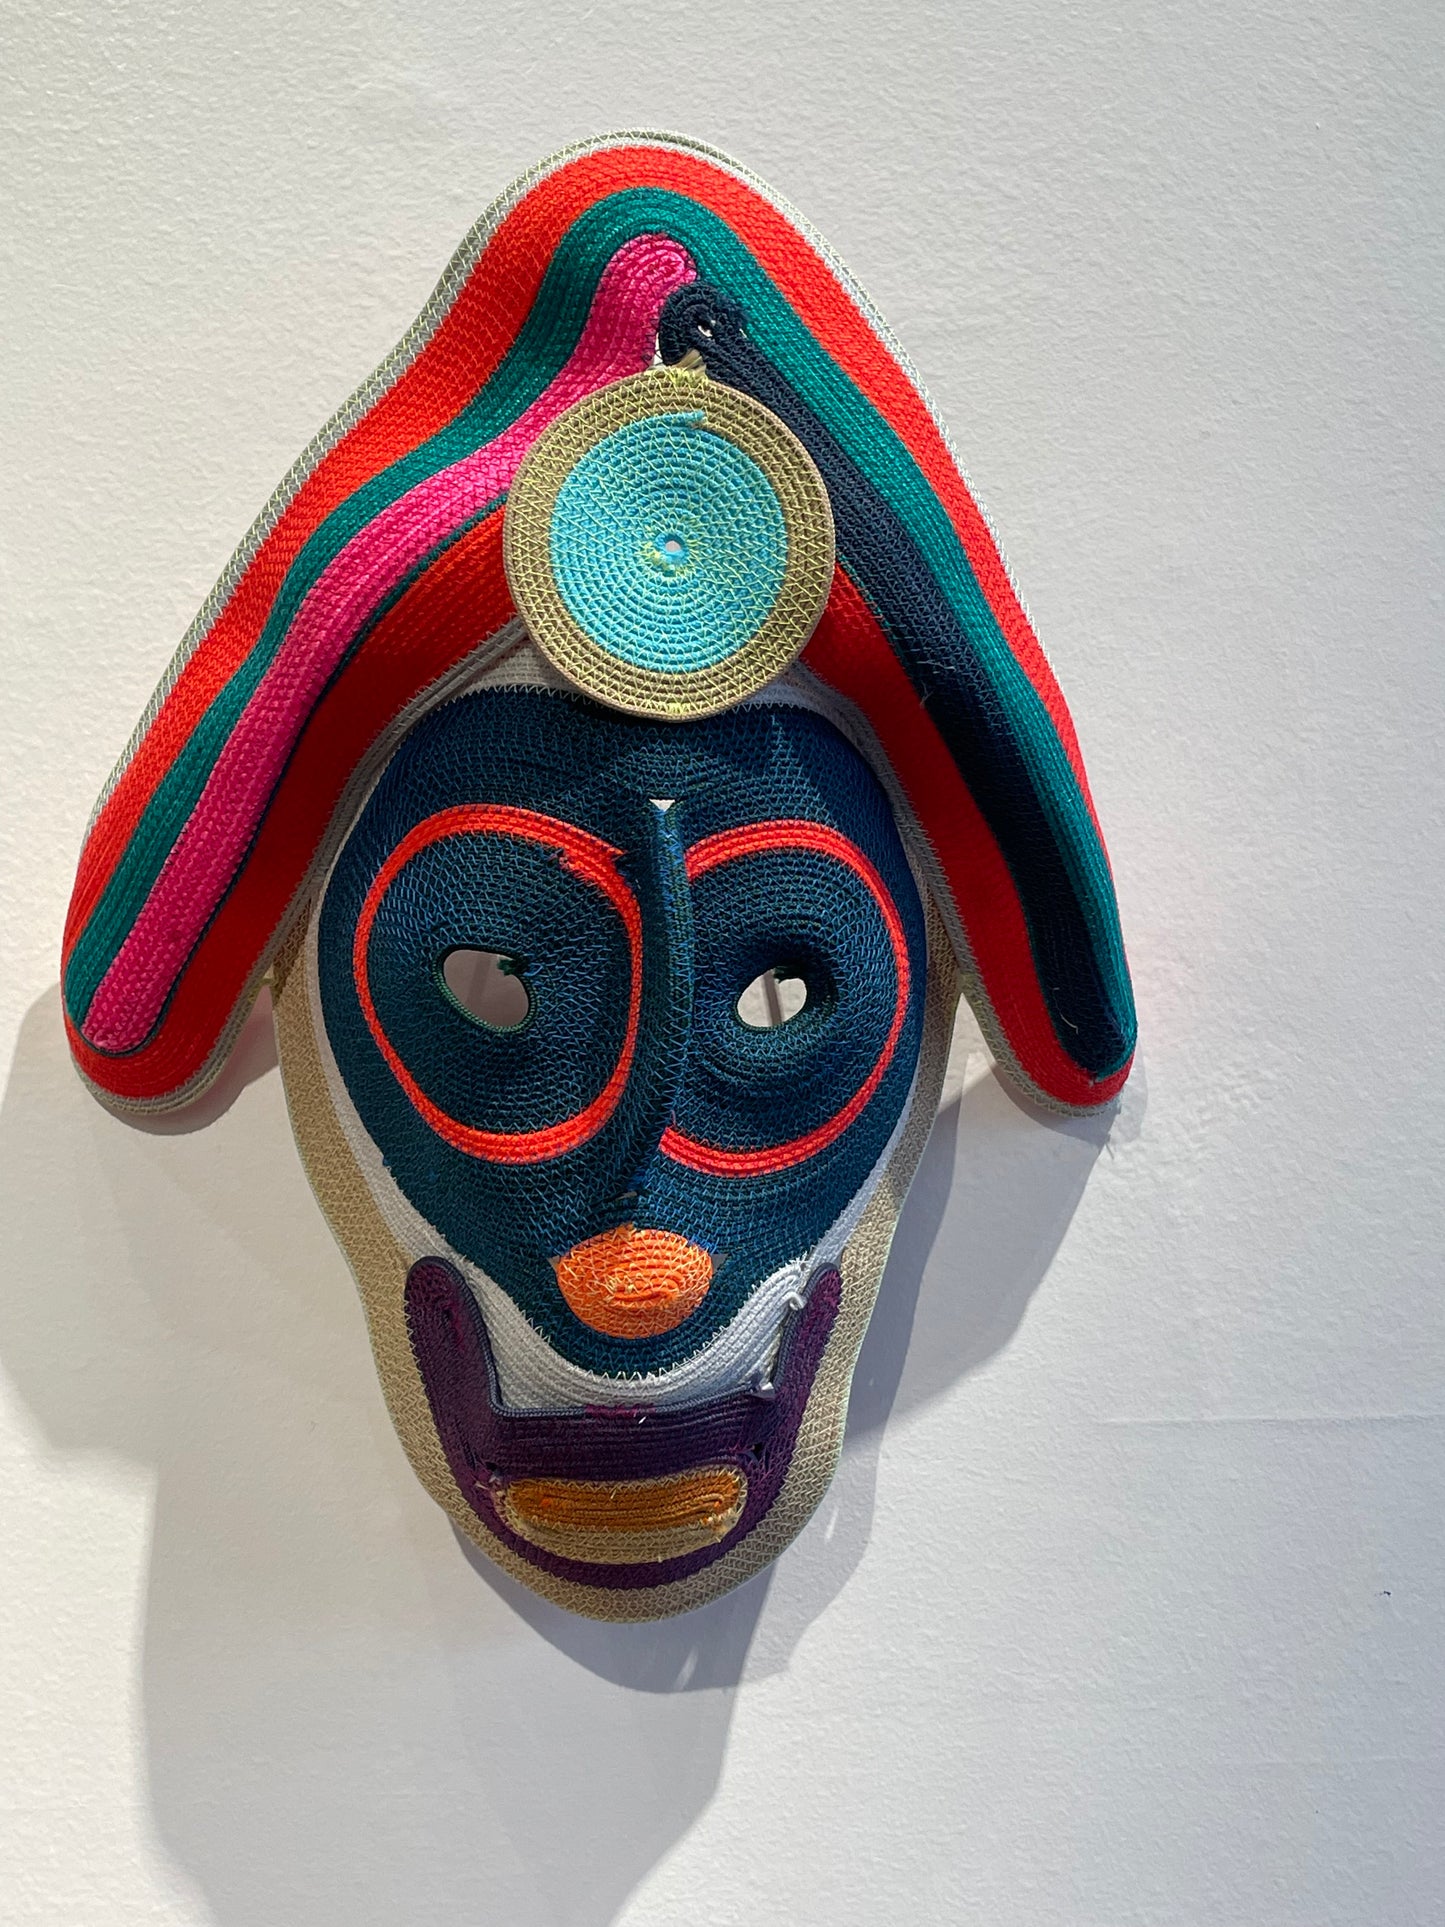 Floppy Ear Rope Mask from Studio Bertjan Pot